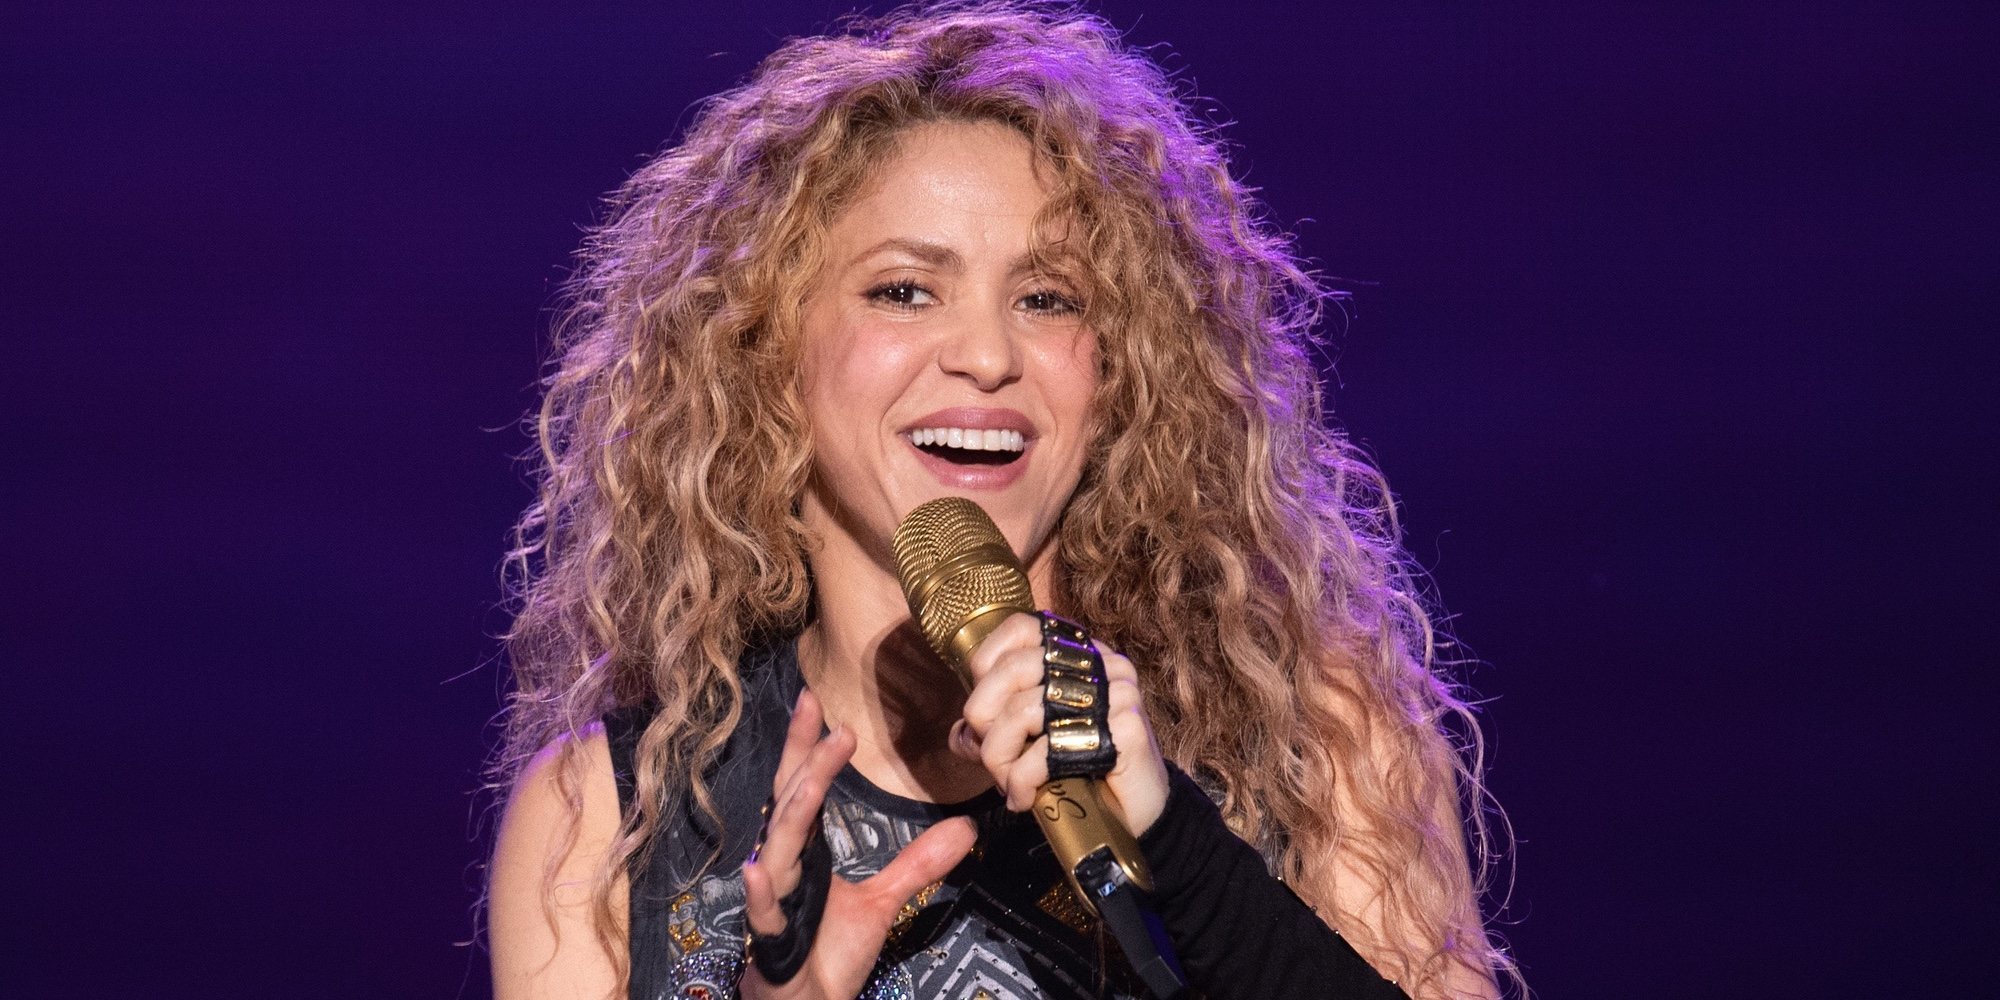 Sale a la luz la enorme cantidad de dinero que Shakira defraudó a Hacienda